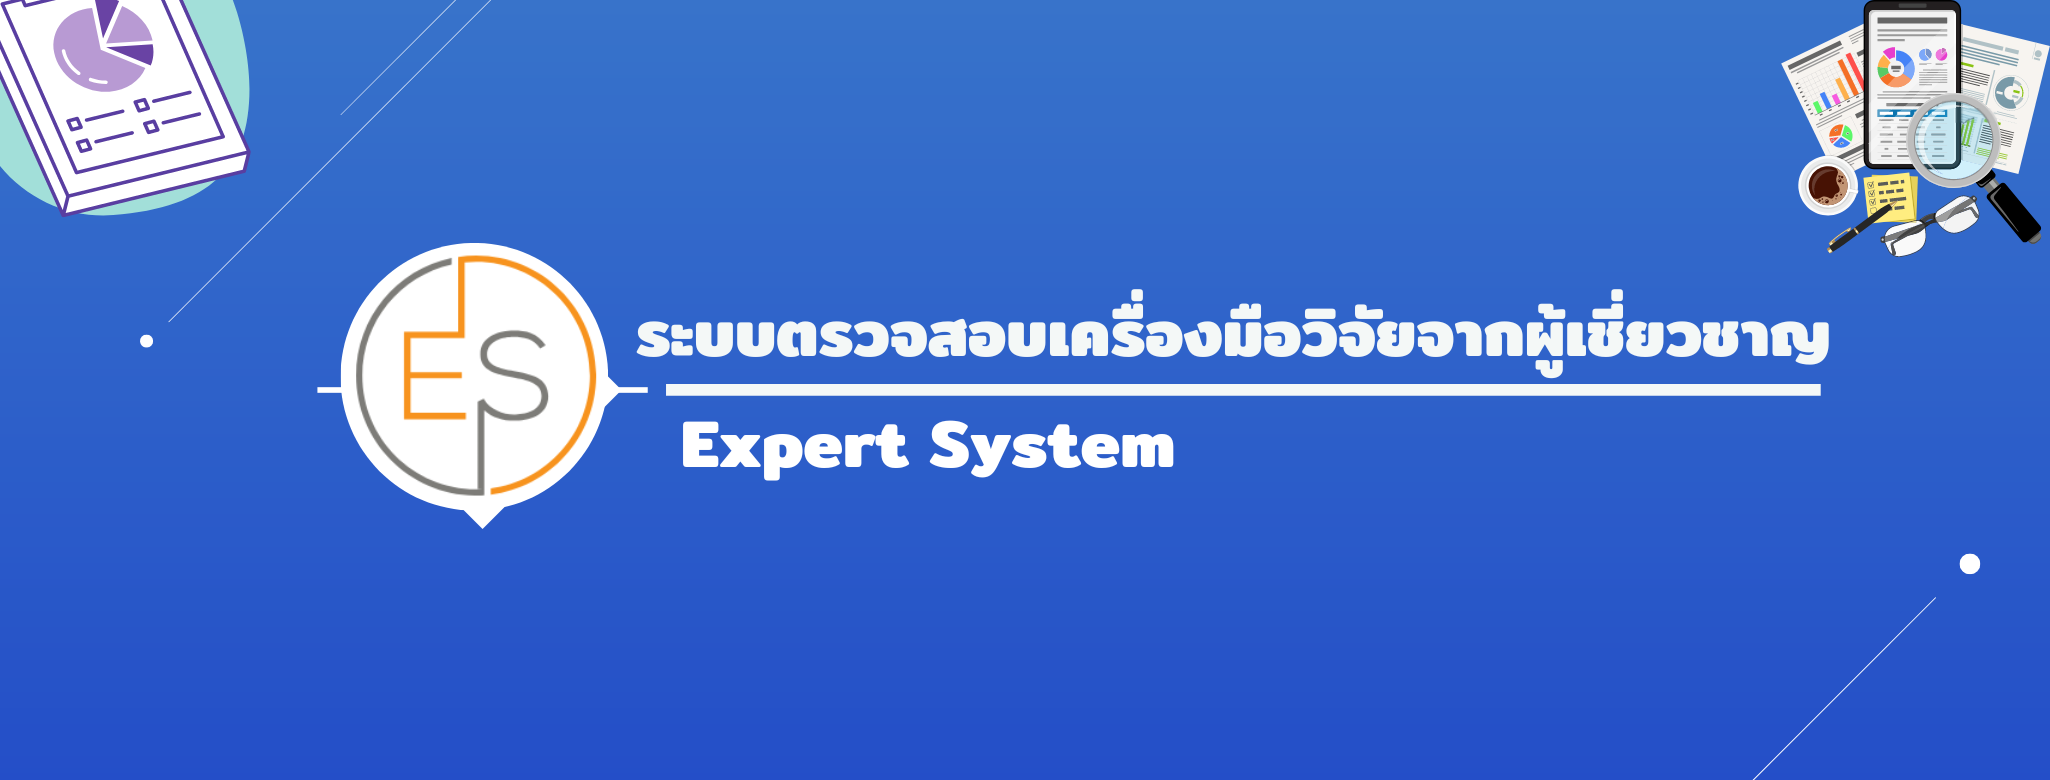 Expert System V.1